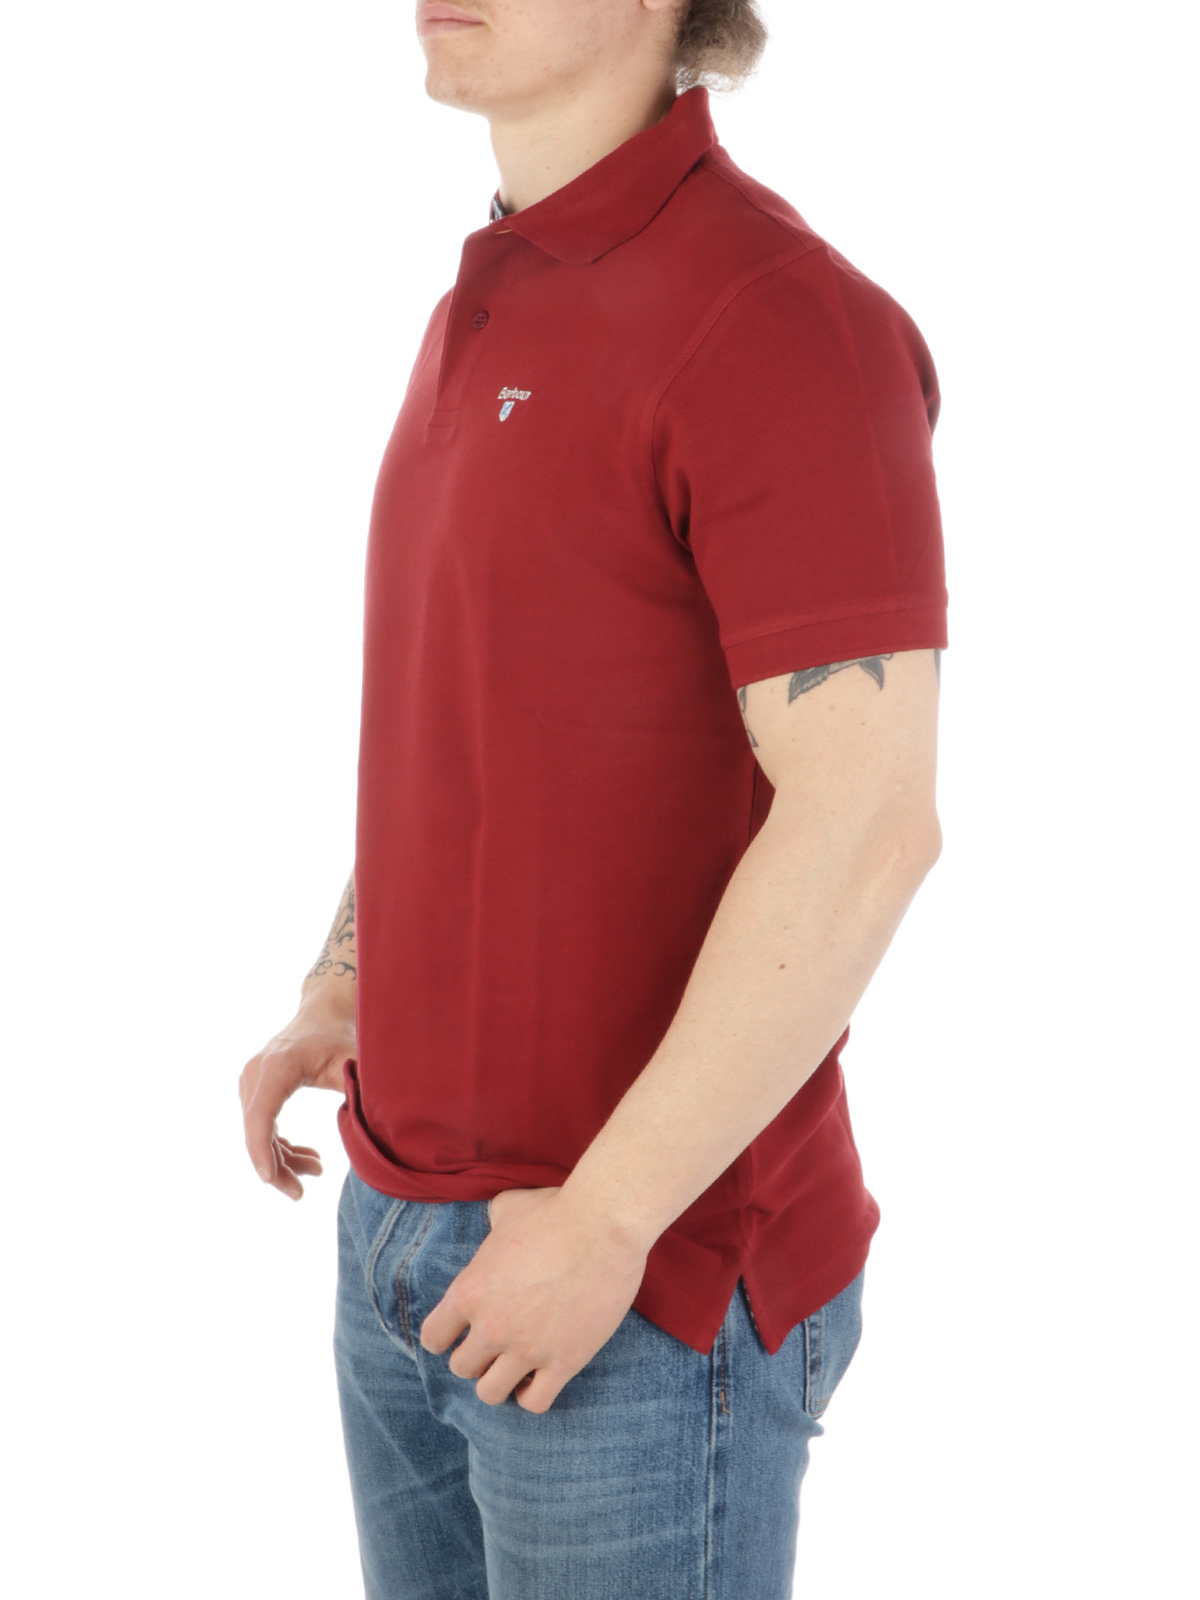 Picture of BARBOUR | Men's Piquè Cotton Polo Shirt